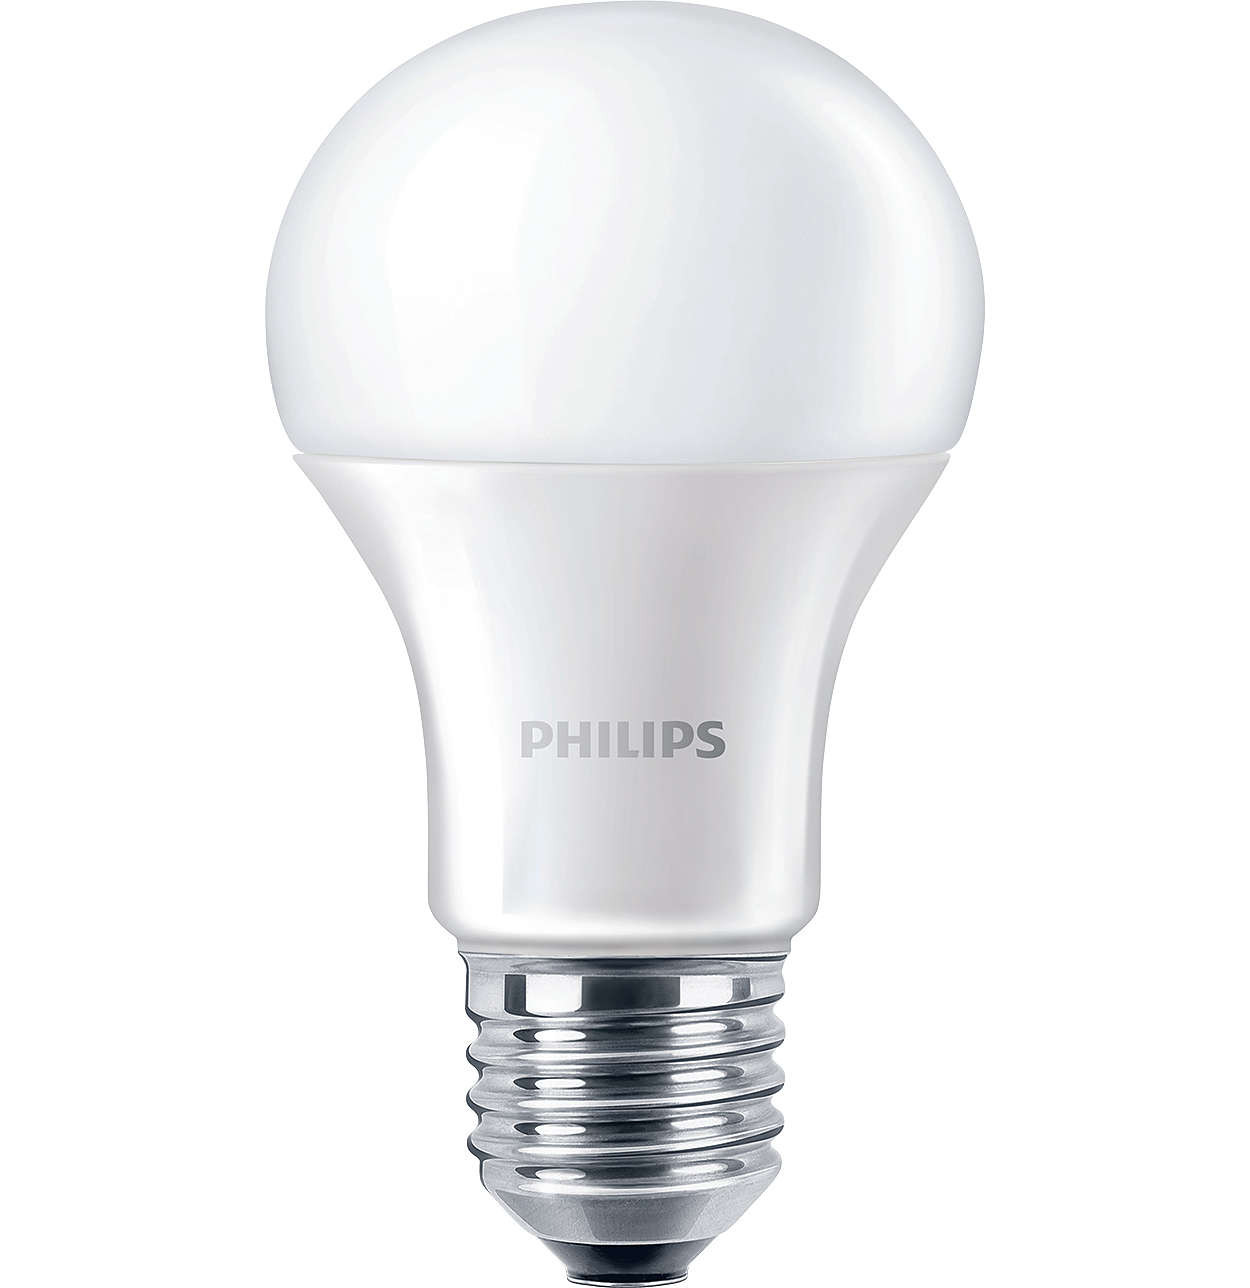 Philips CorePro LEDbulb 11-75W E27 827